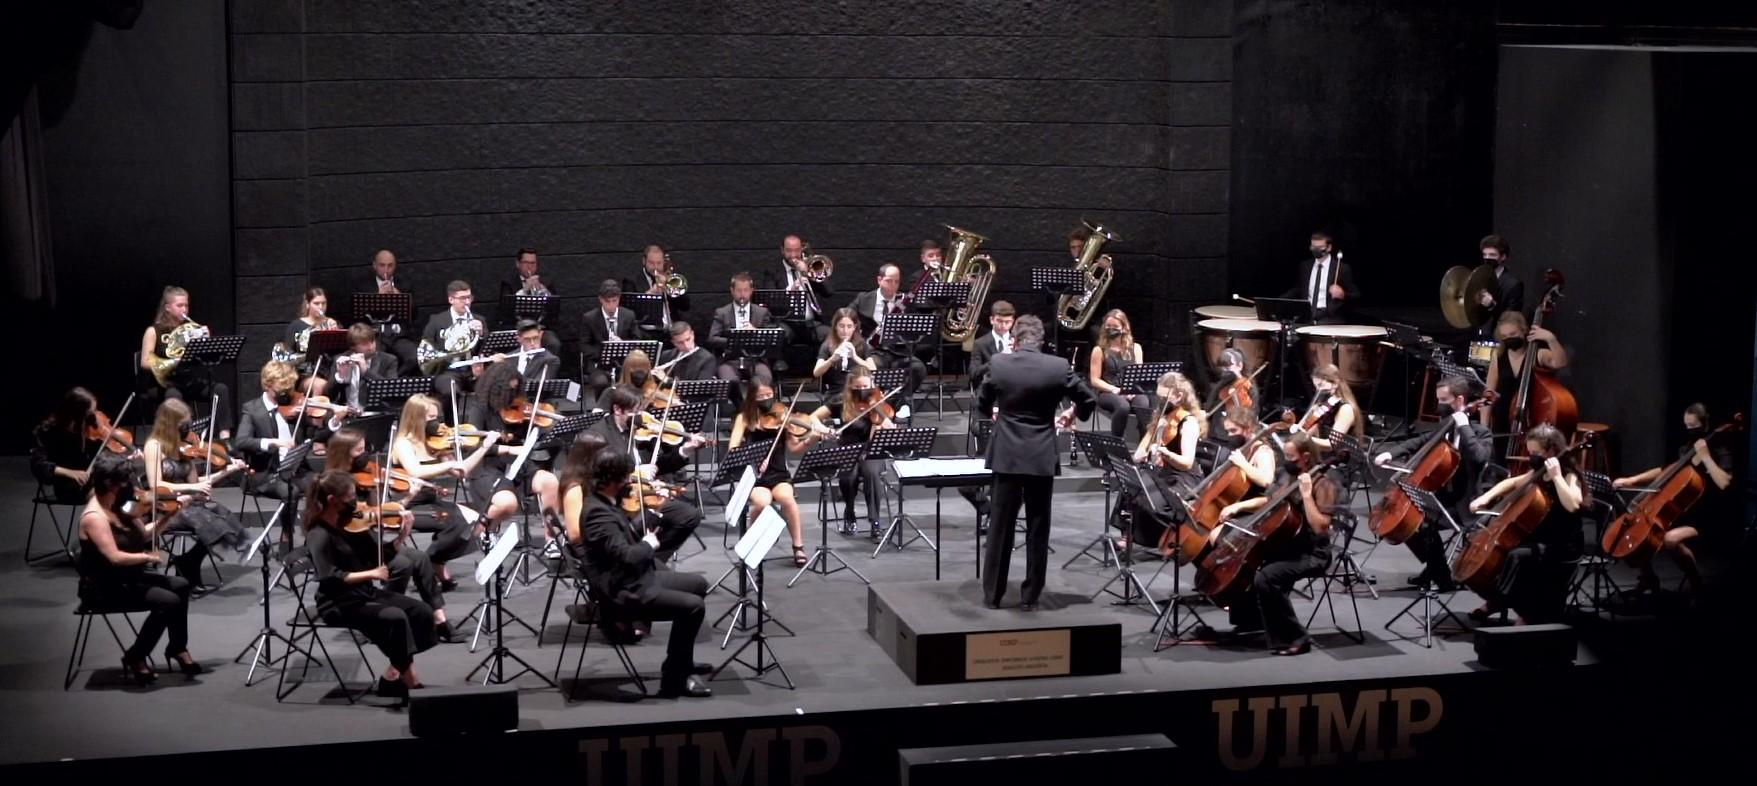 Concierto a beneficio de La Cocina Económica. Orquesta Sinfónica Juvenil UIMP – Ataúlfo Argenta.